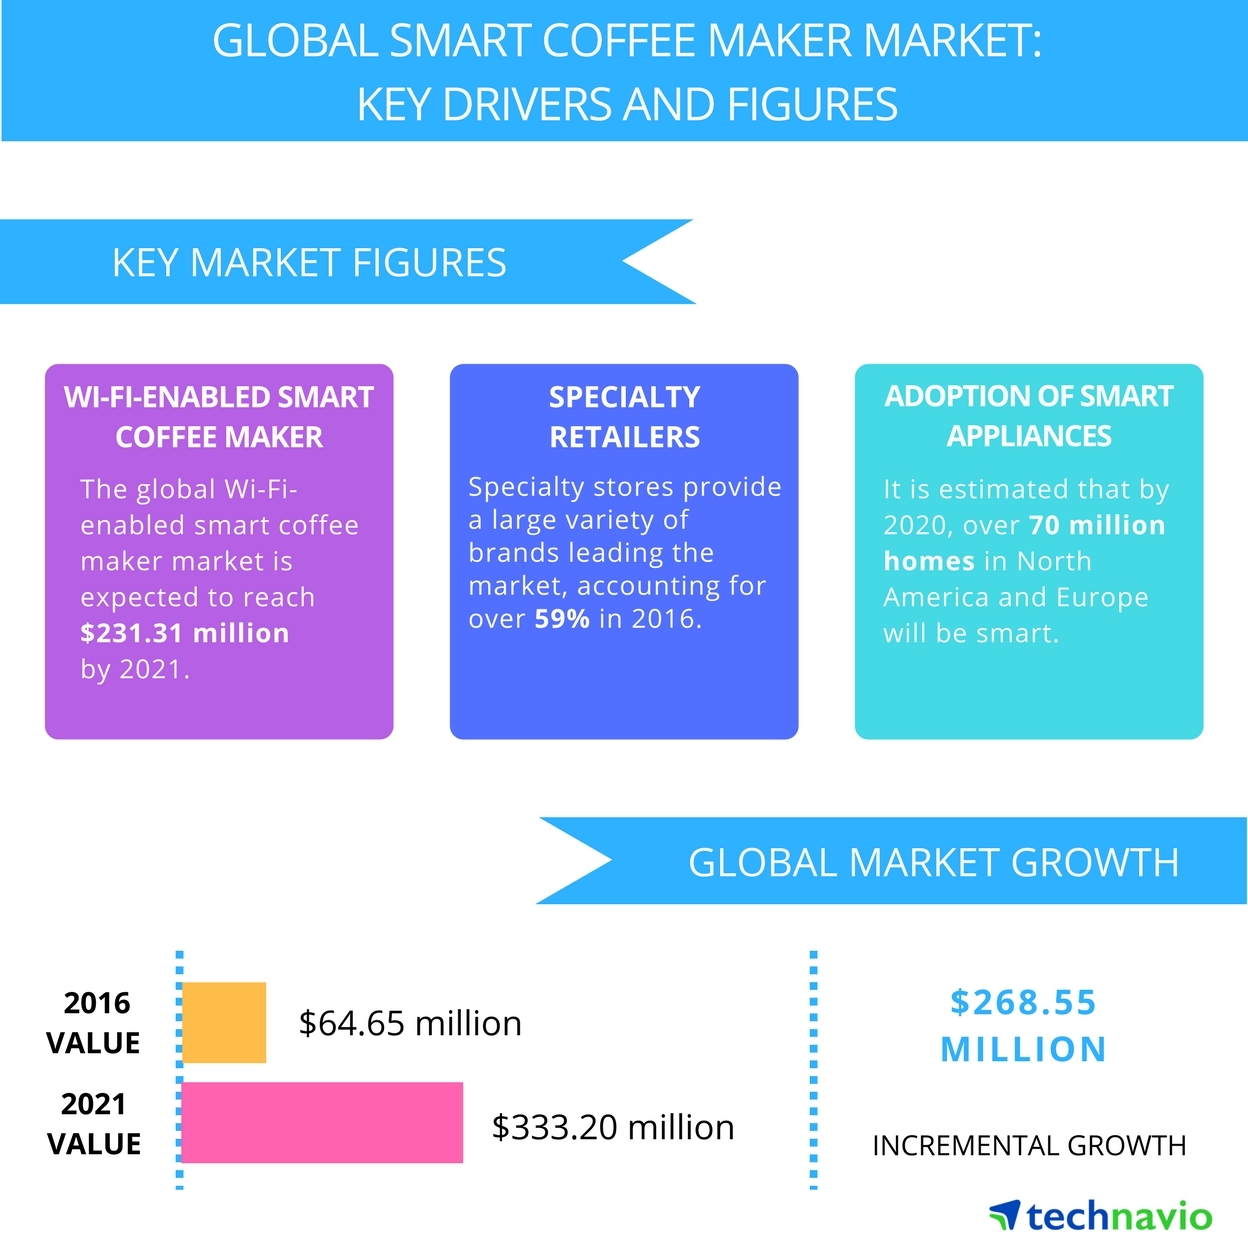 https://mms.businesswire.com/media/20170118005544/en/565057/5/Global_Smart_Coffee_Maker_Market.jpg